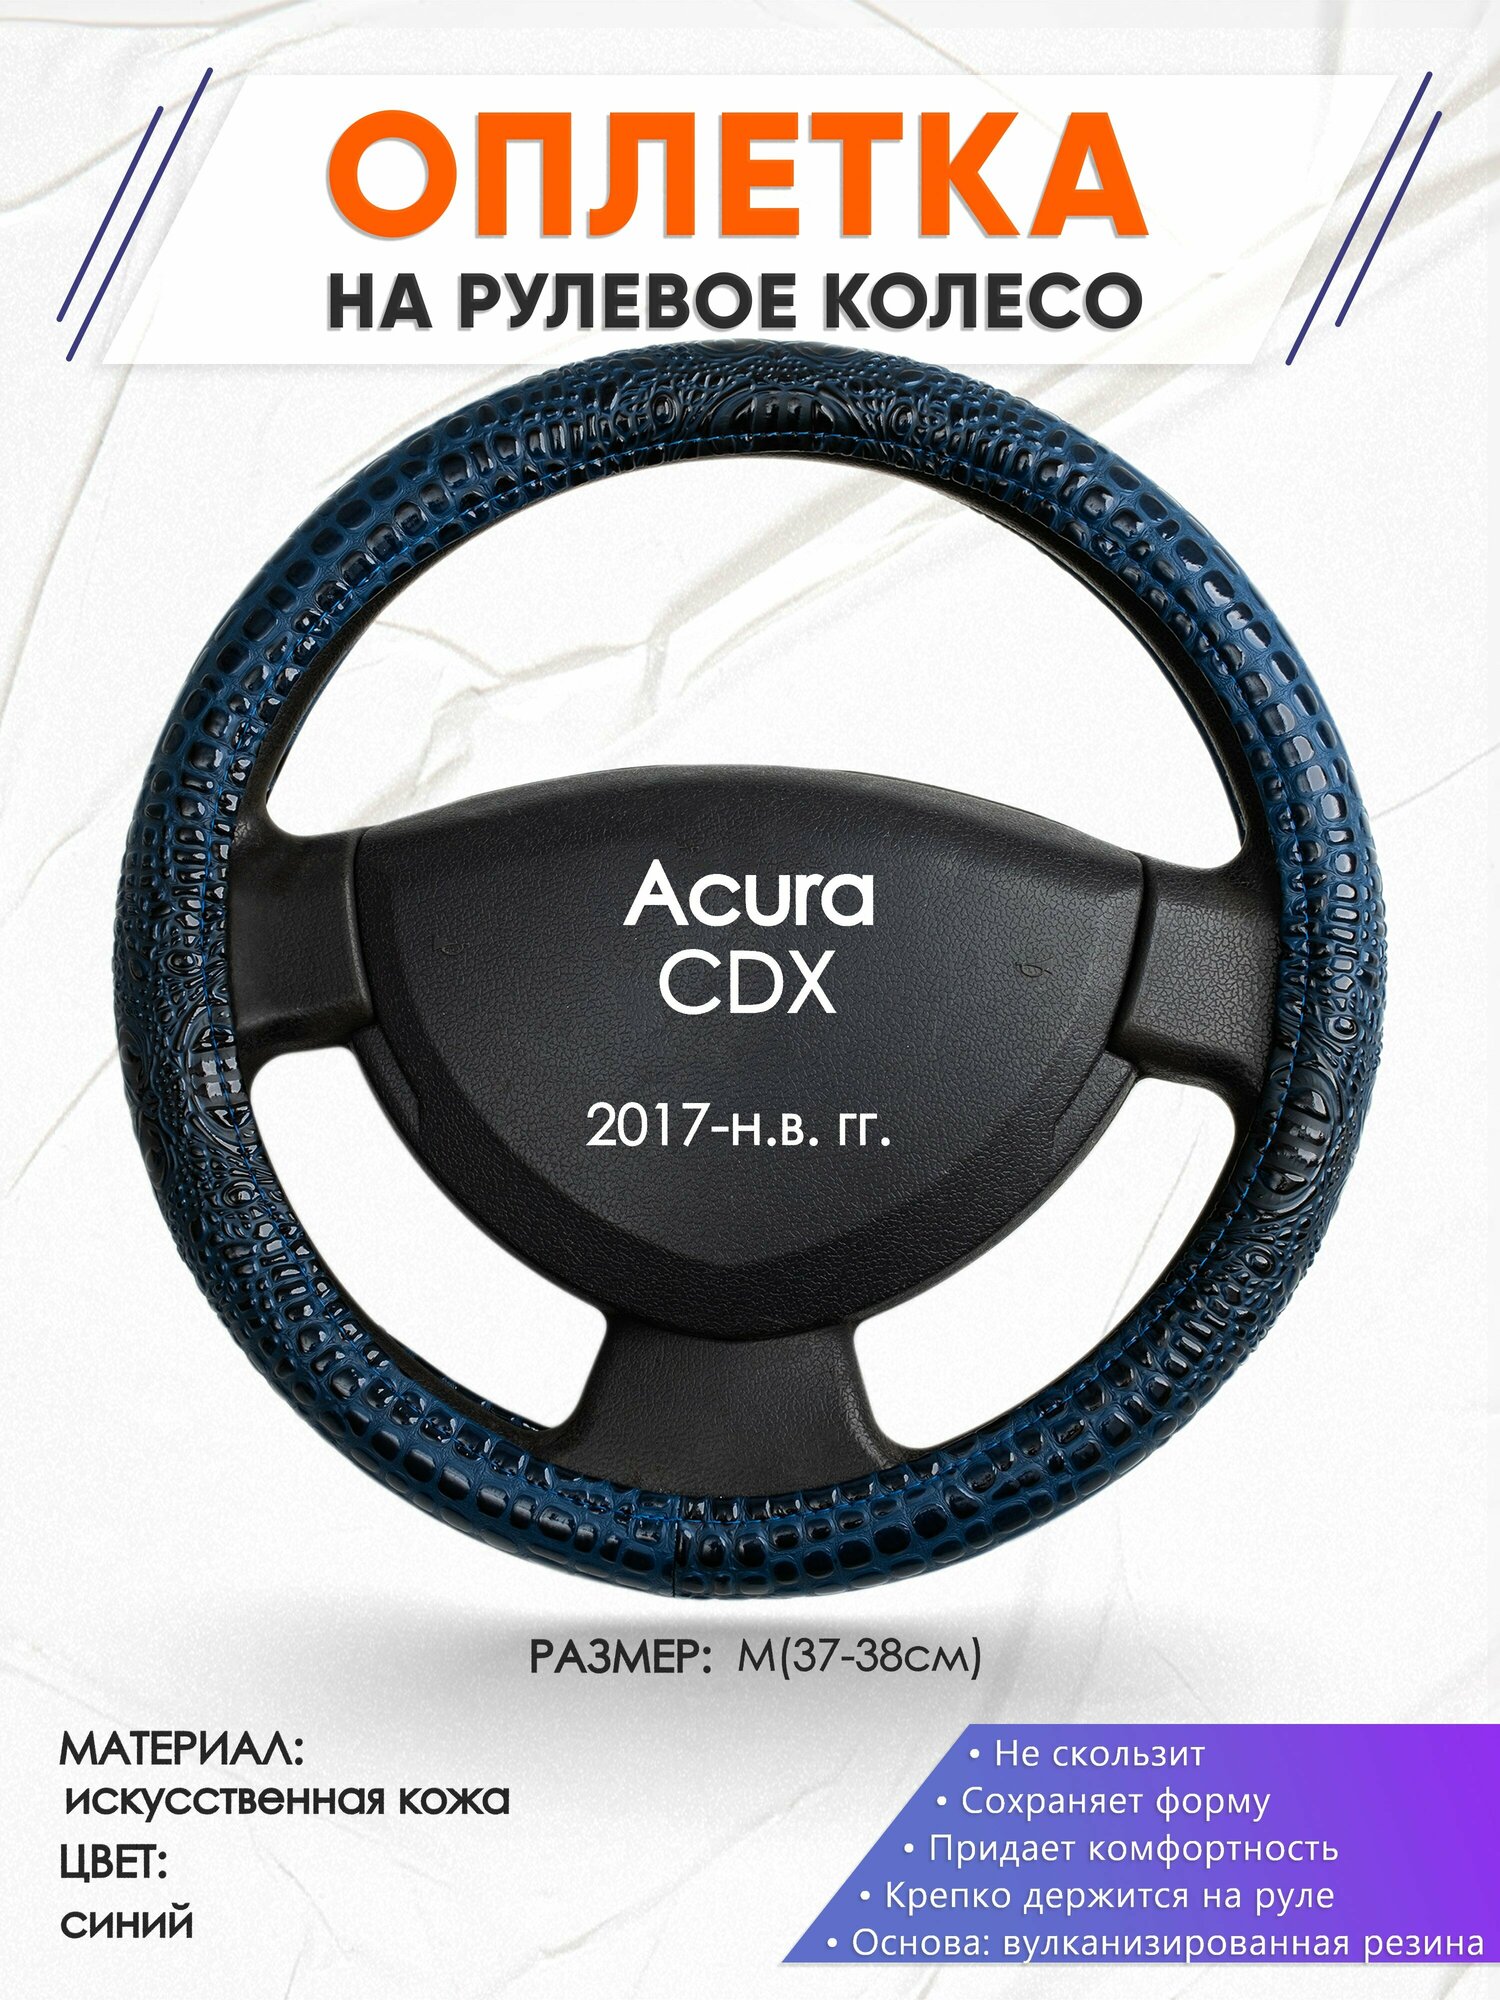 Оплетка наруль для Acura CDX(Акура СДХ) 2017-н.в. годов выпуска, размер M(37-38см), Искусственная кожа 78